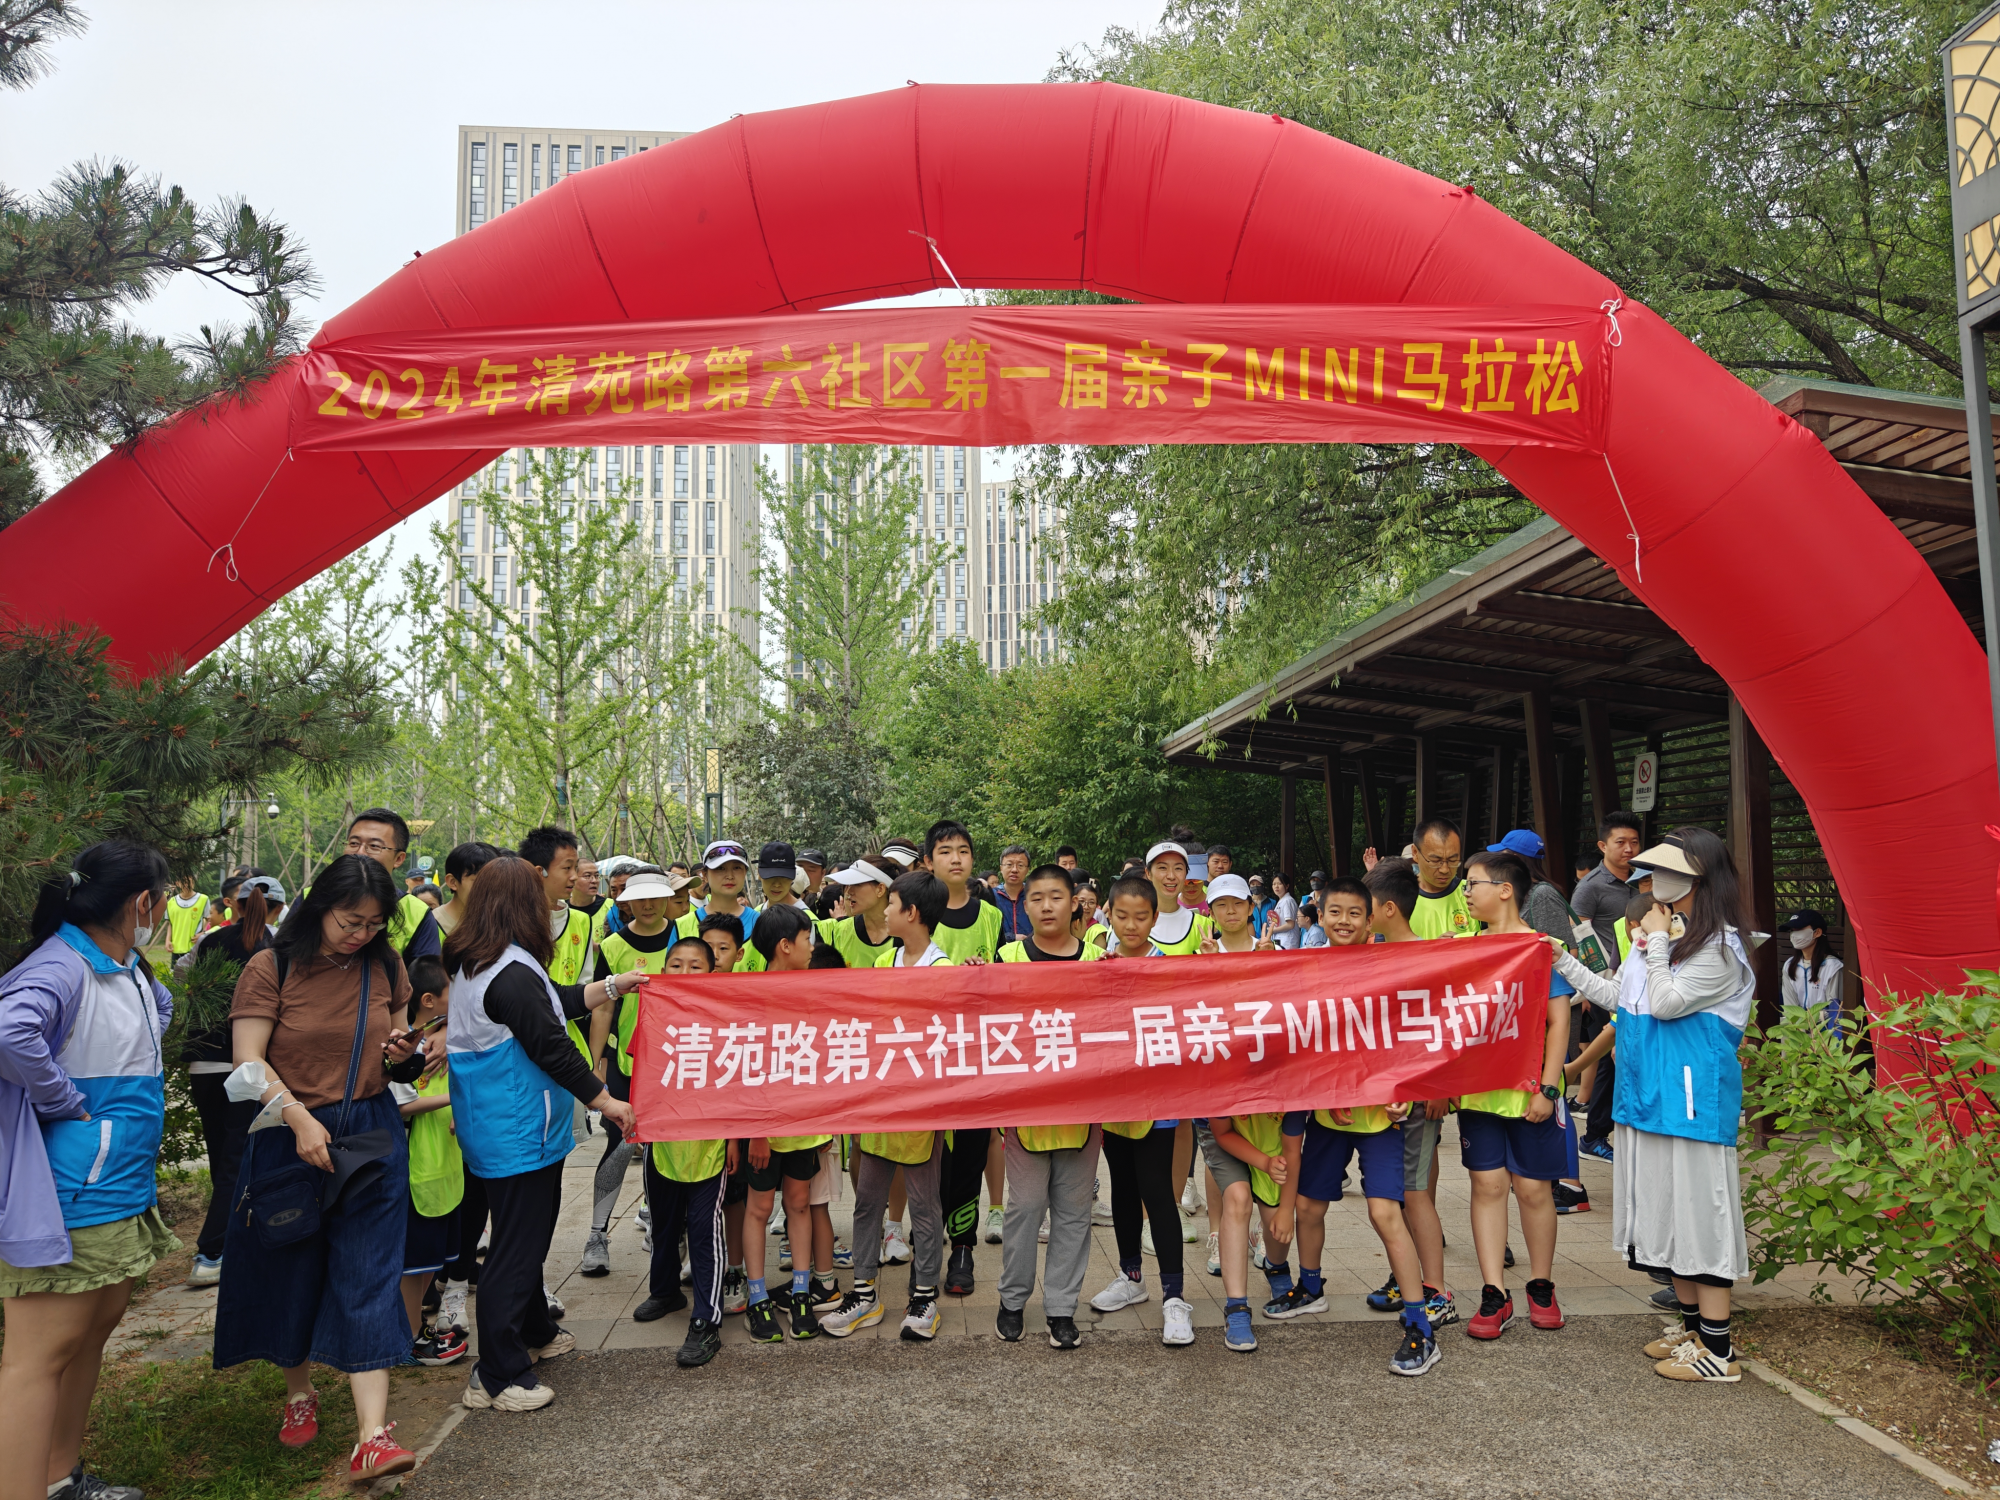 北京市对外贸易学校师生参加社区亲子mini马拉松志愿活动